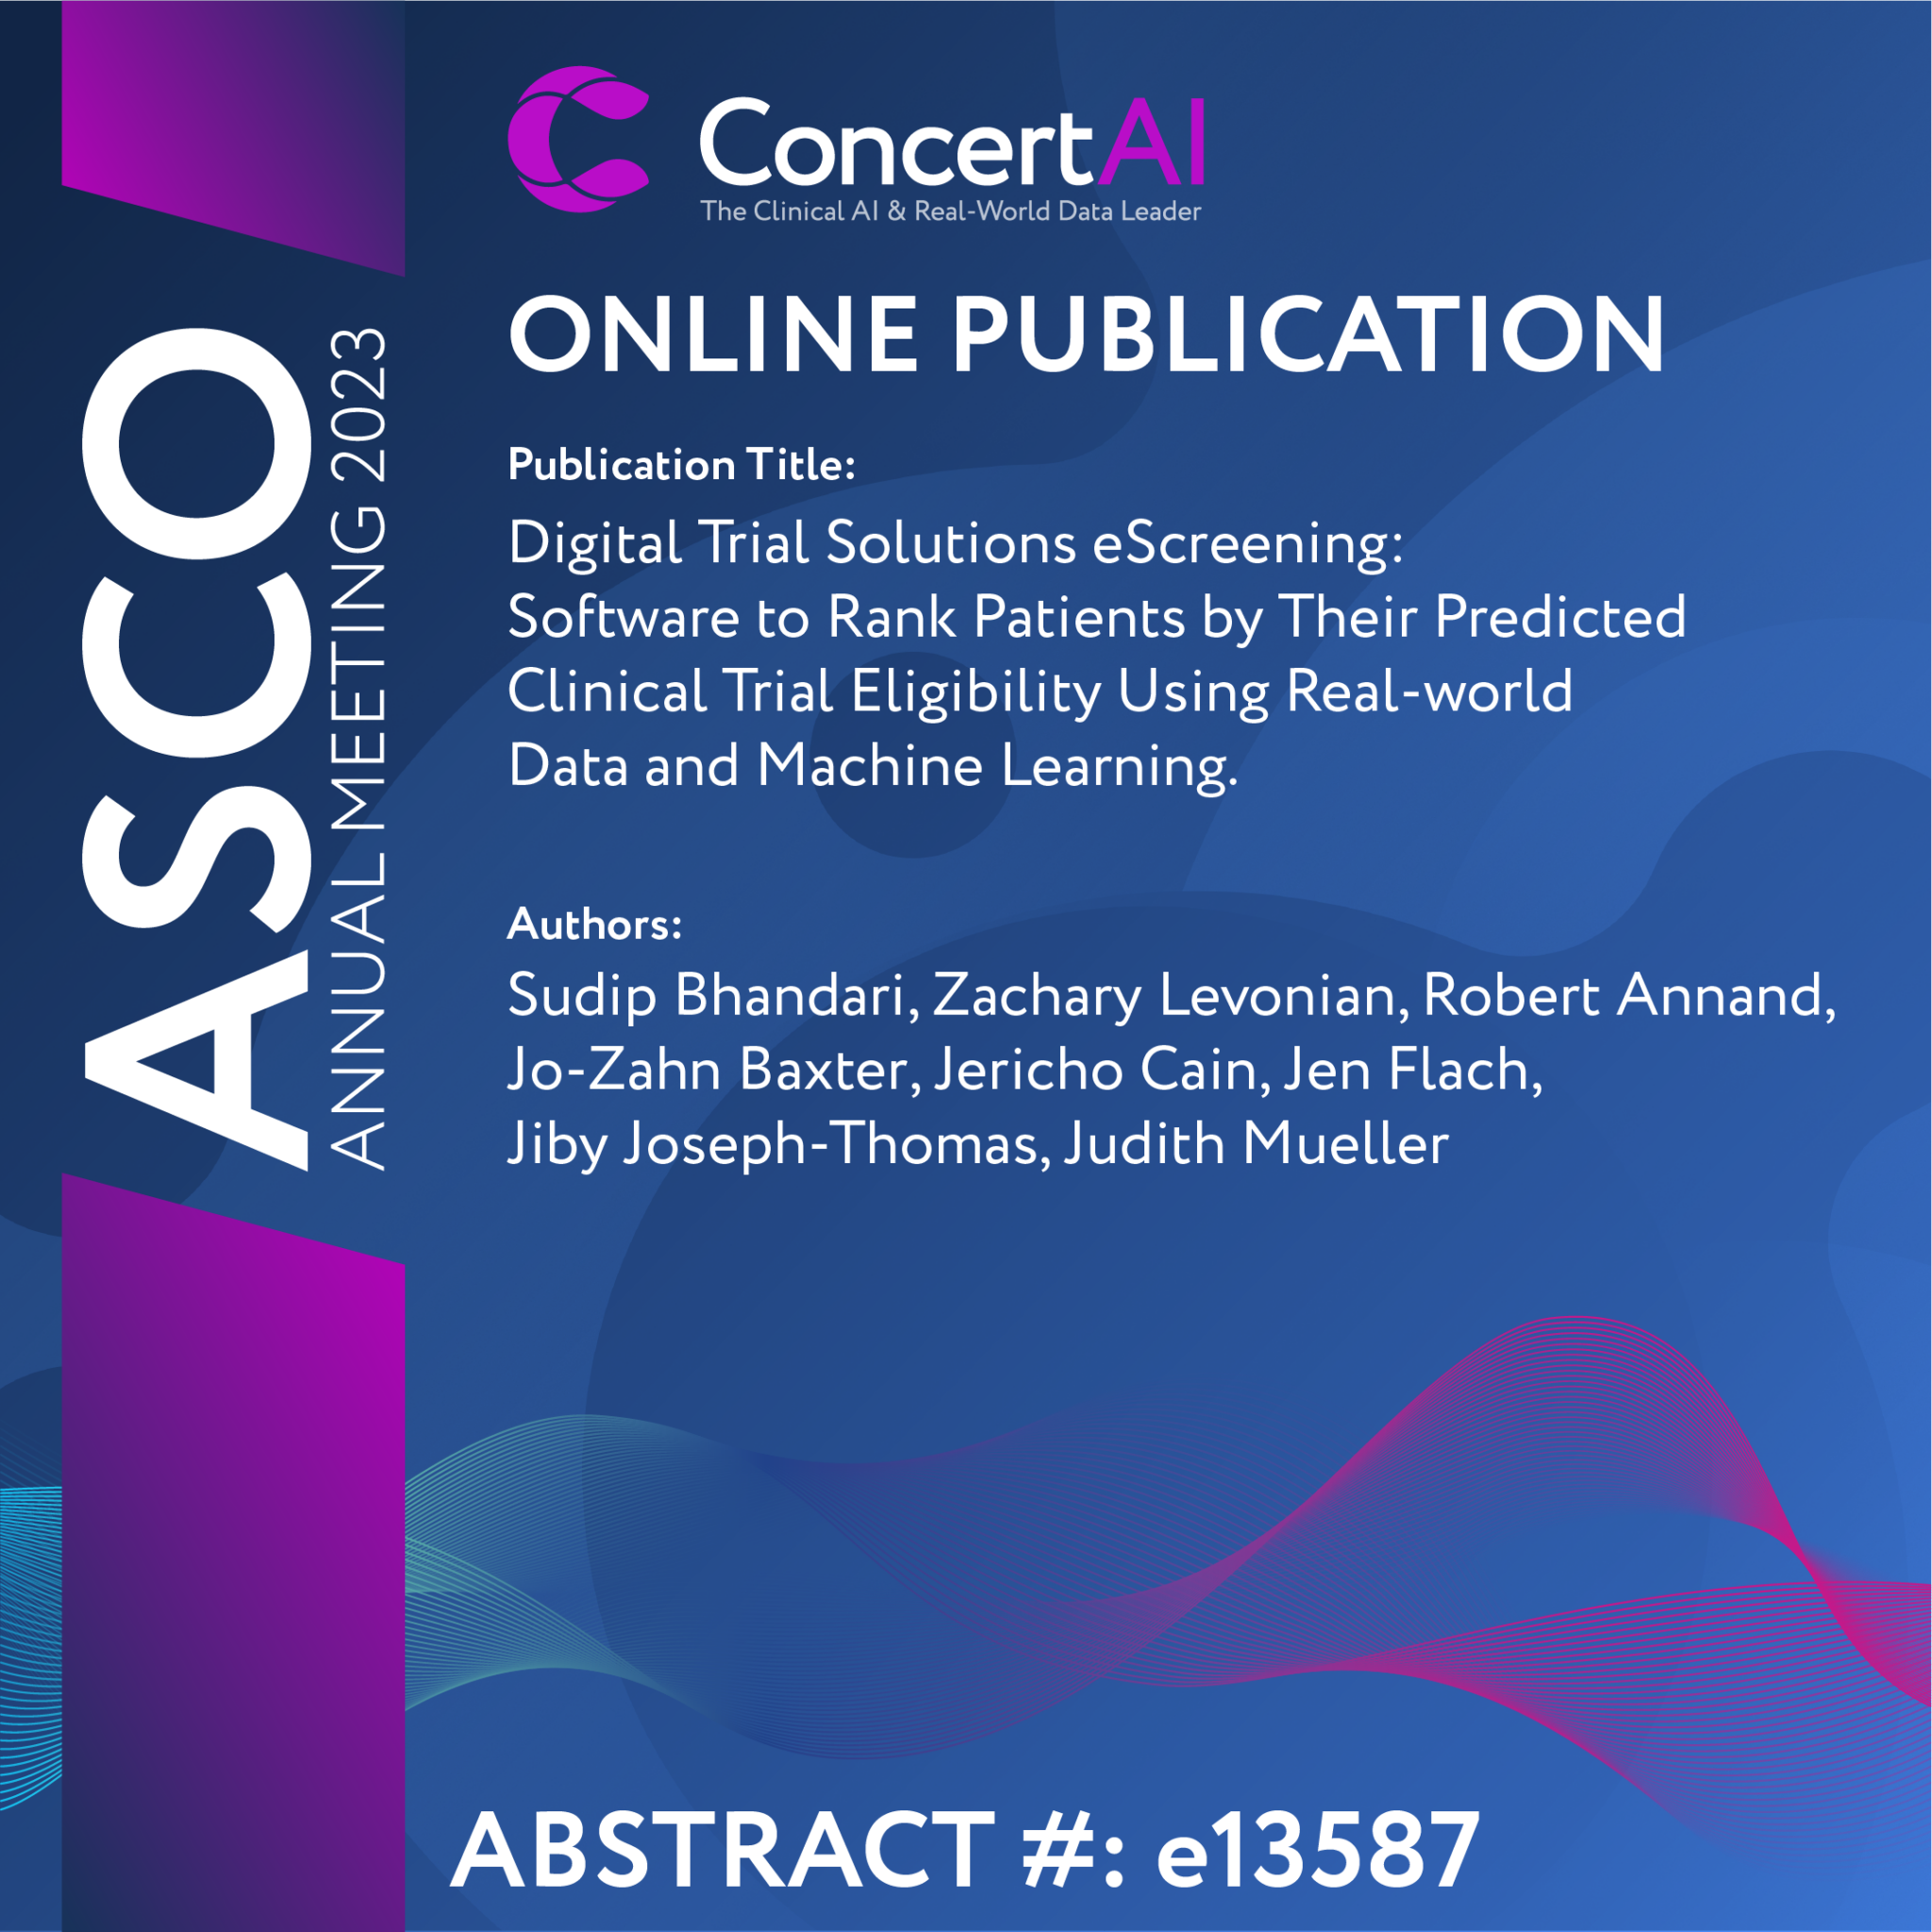 ConcertAI Online Publications 219662